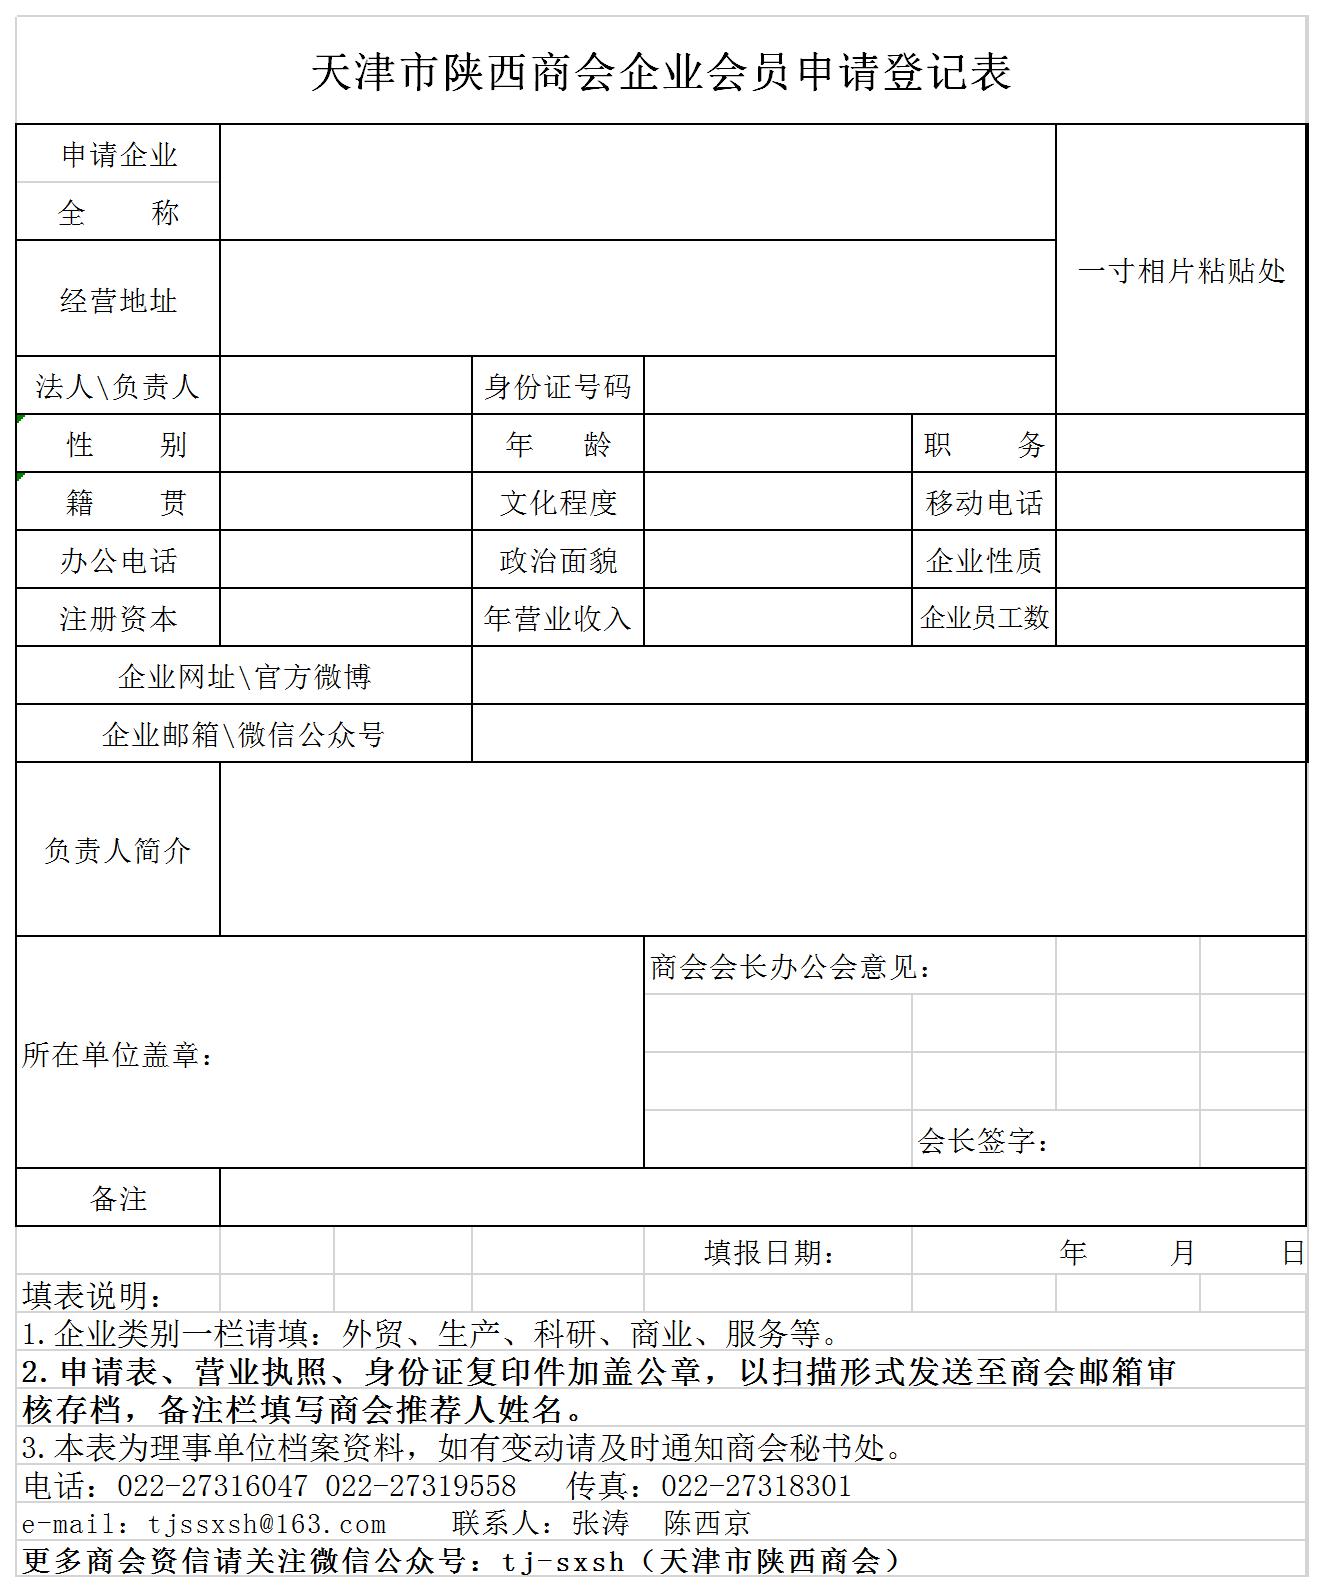 天津陕西商会企业会员申请登记表.jpg